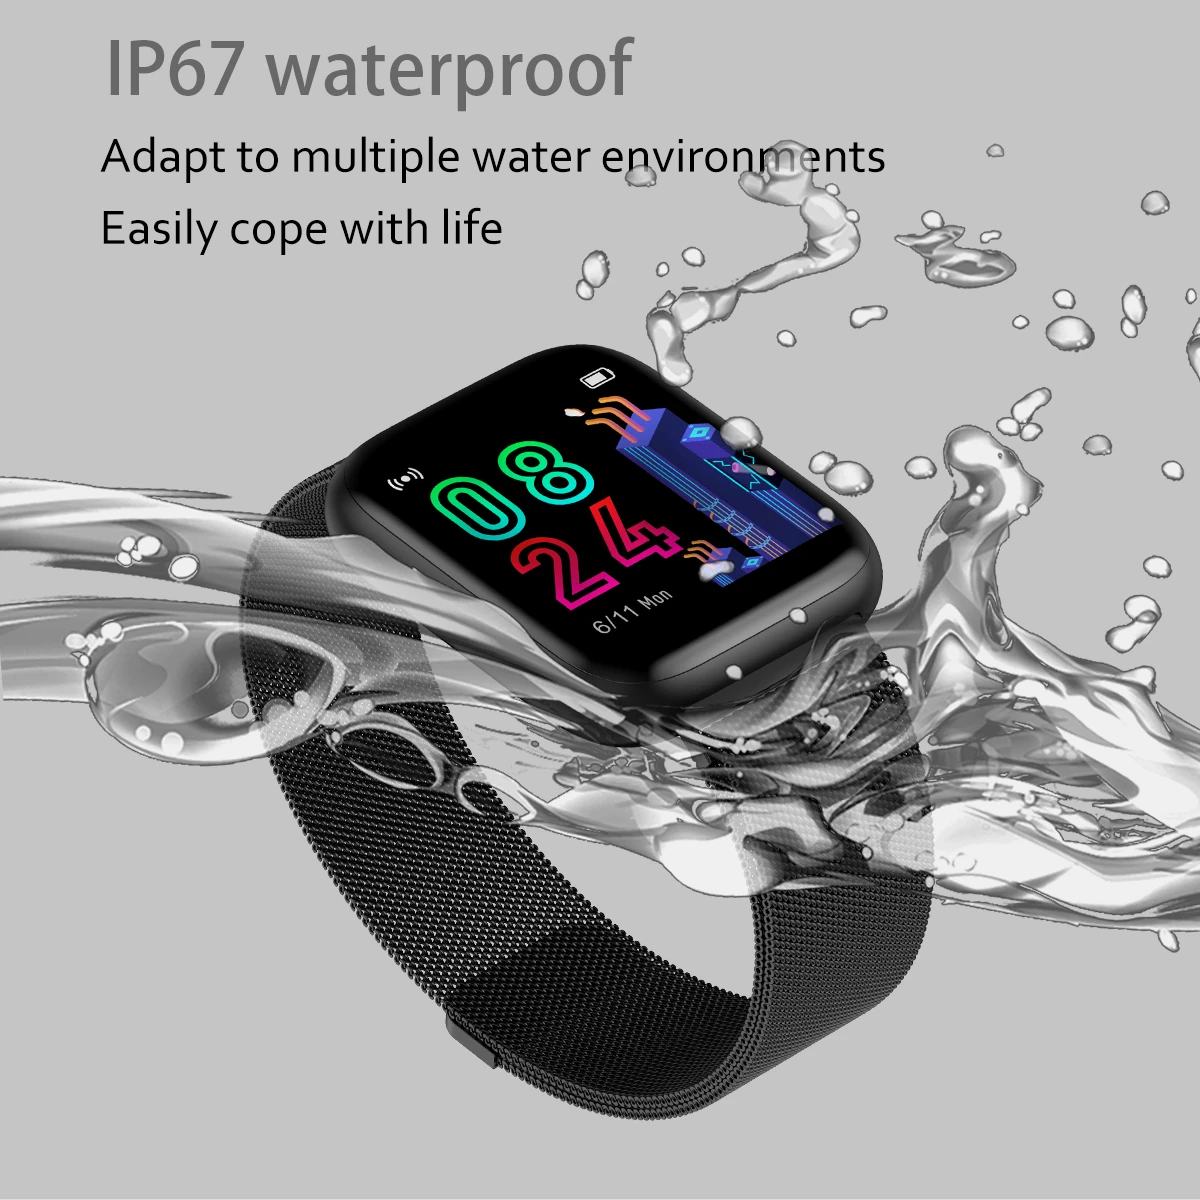 LYKRY P4 мужские и женские Смарт-часы 1,4 дюймов ips полный экран сенсорный мониторинг сердечного ритма IP67 Водонепроницаемый фитнес-трекер часы